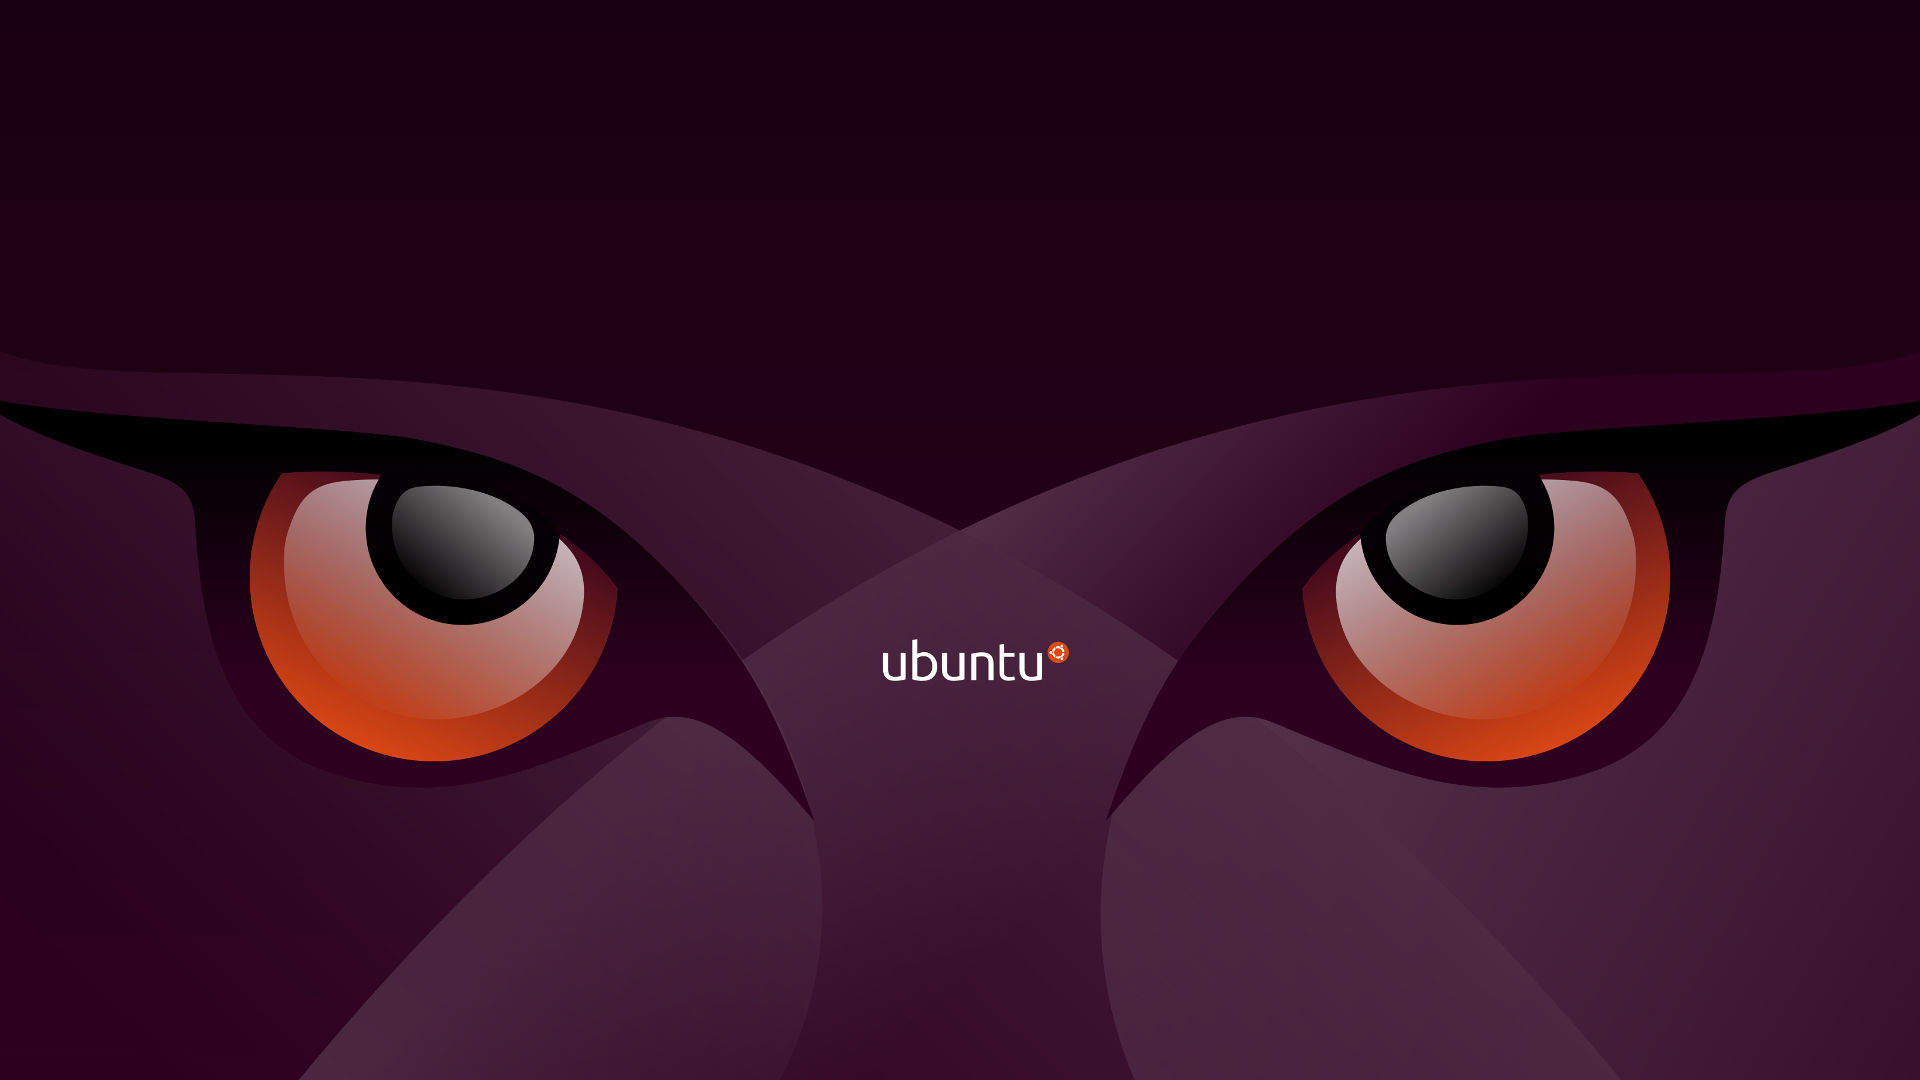 Ubuntu Wallpapers Desktop Wallpaper 1920x1080 1920x1080